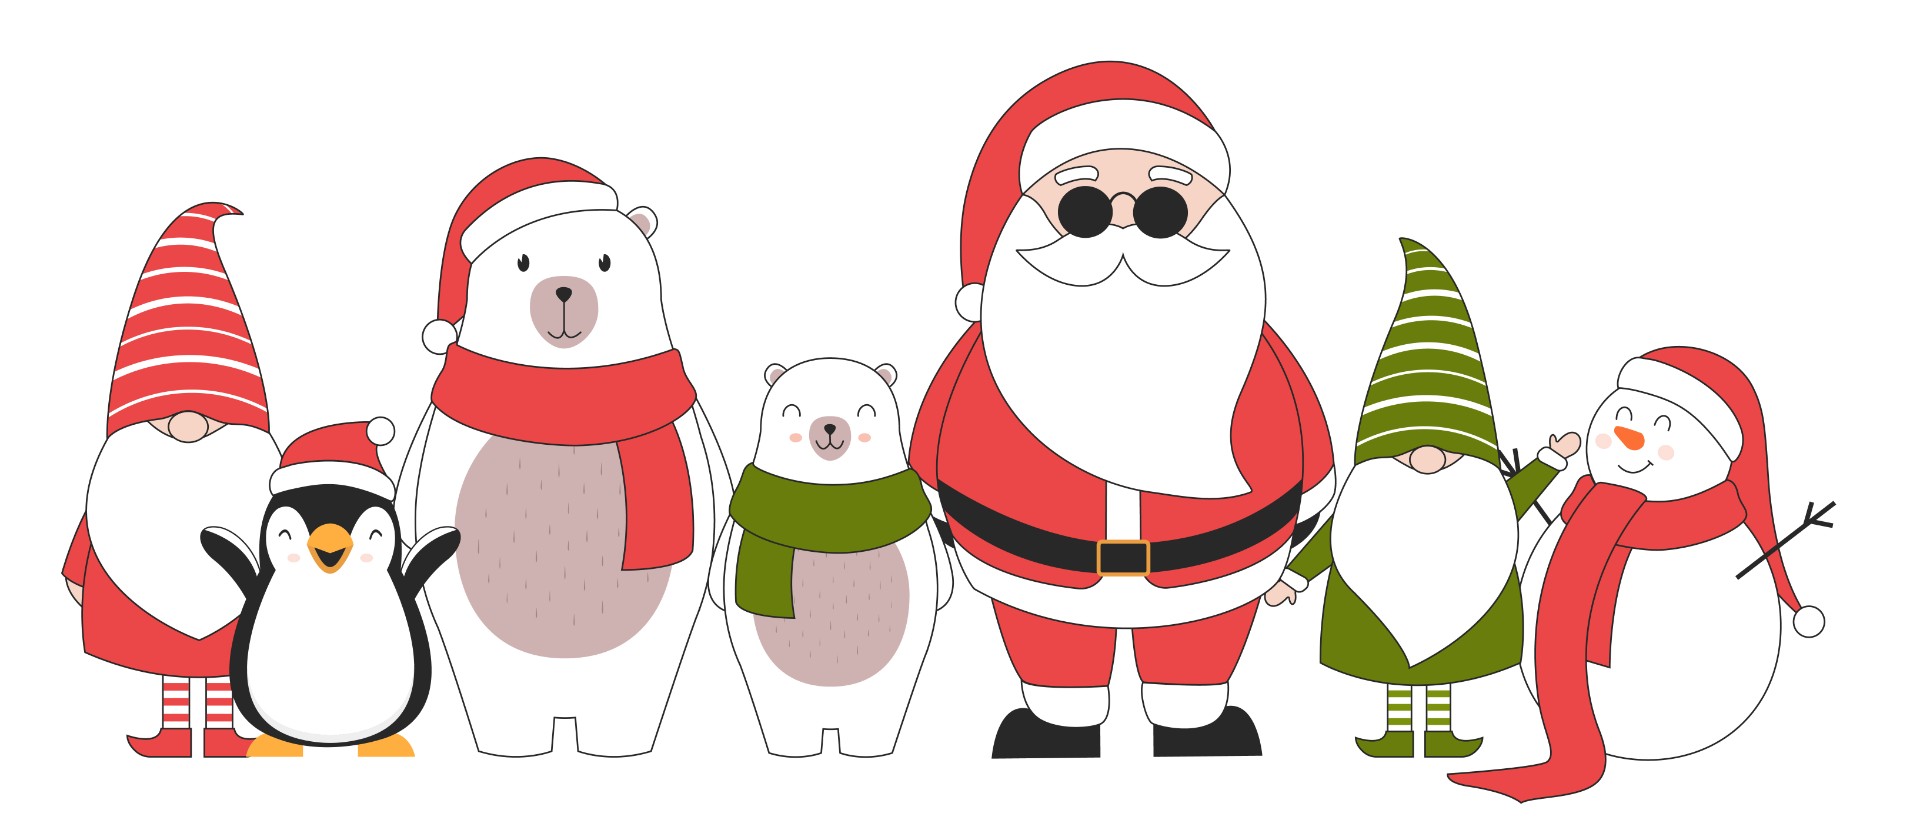 可爱手绘圣诞老人北极熊插画0